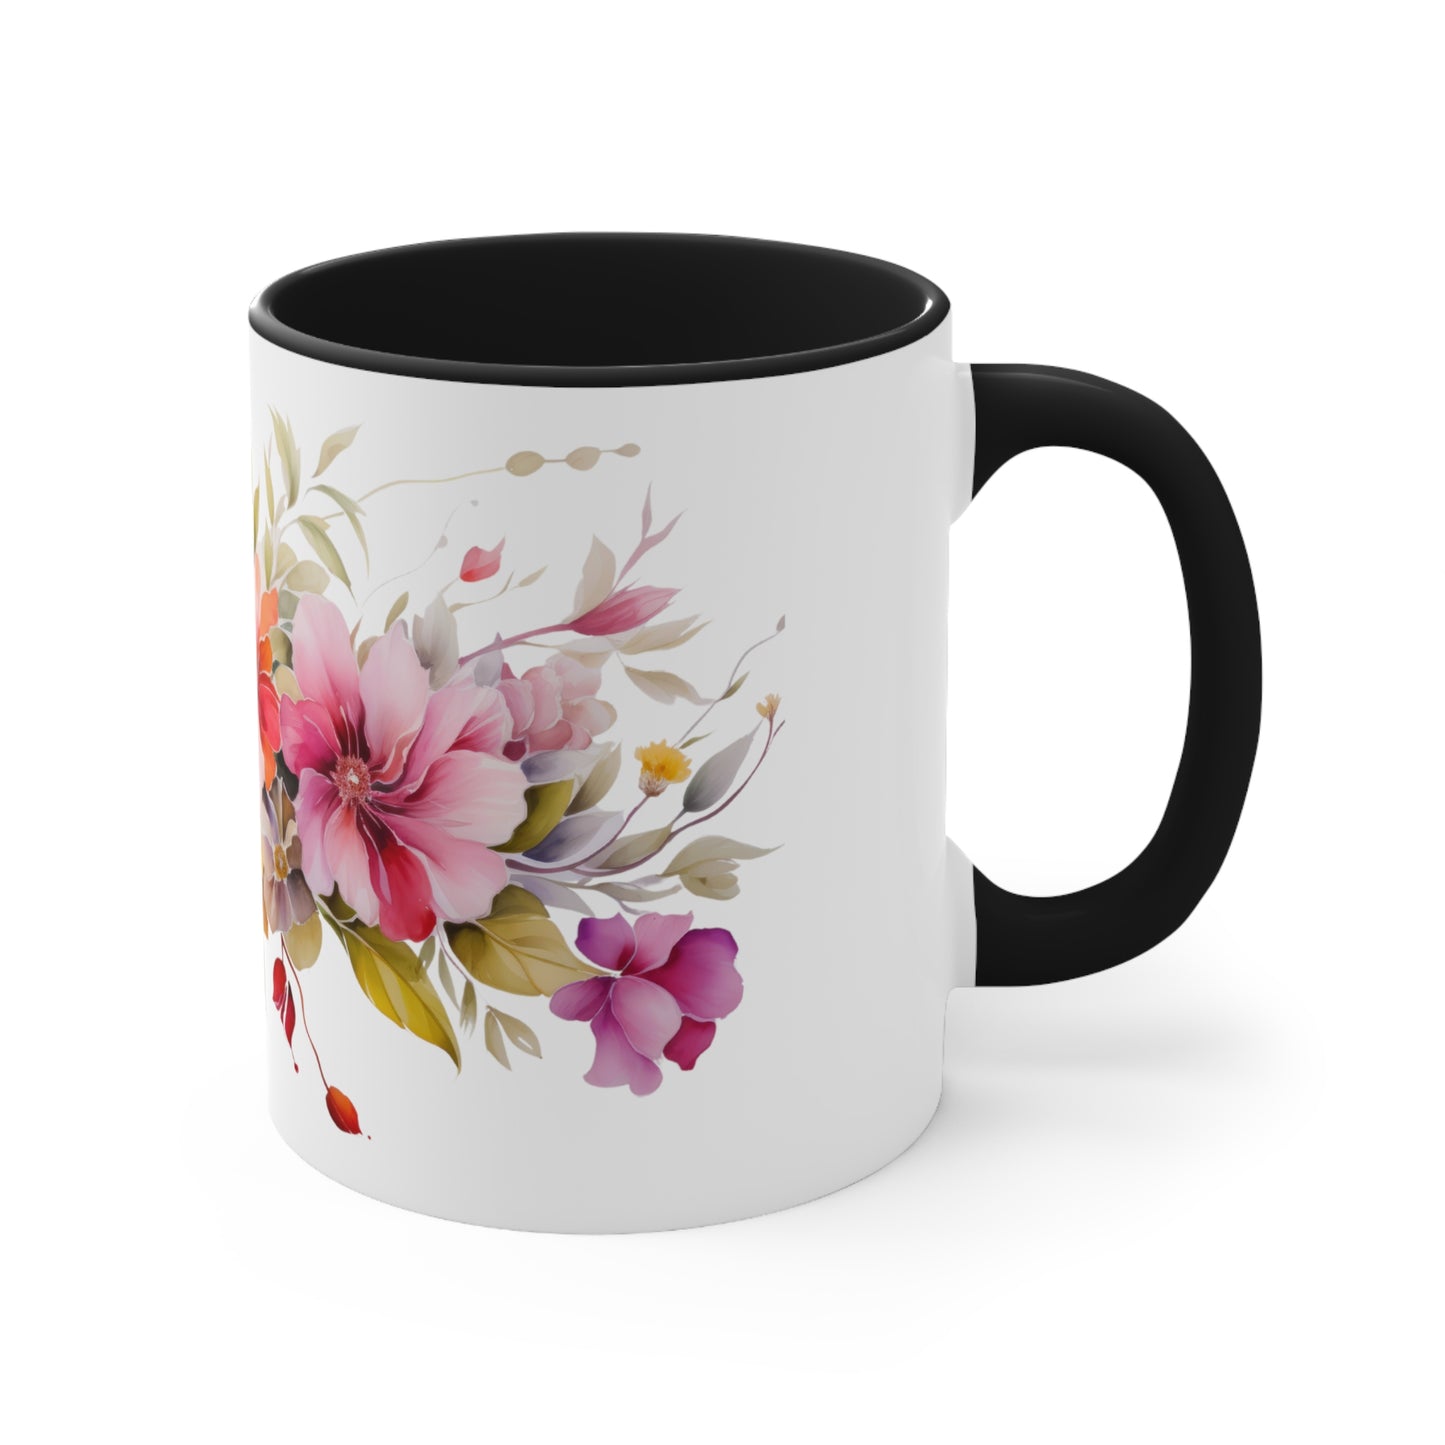 Flower Infused Mug